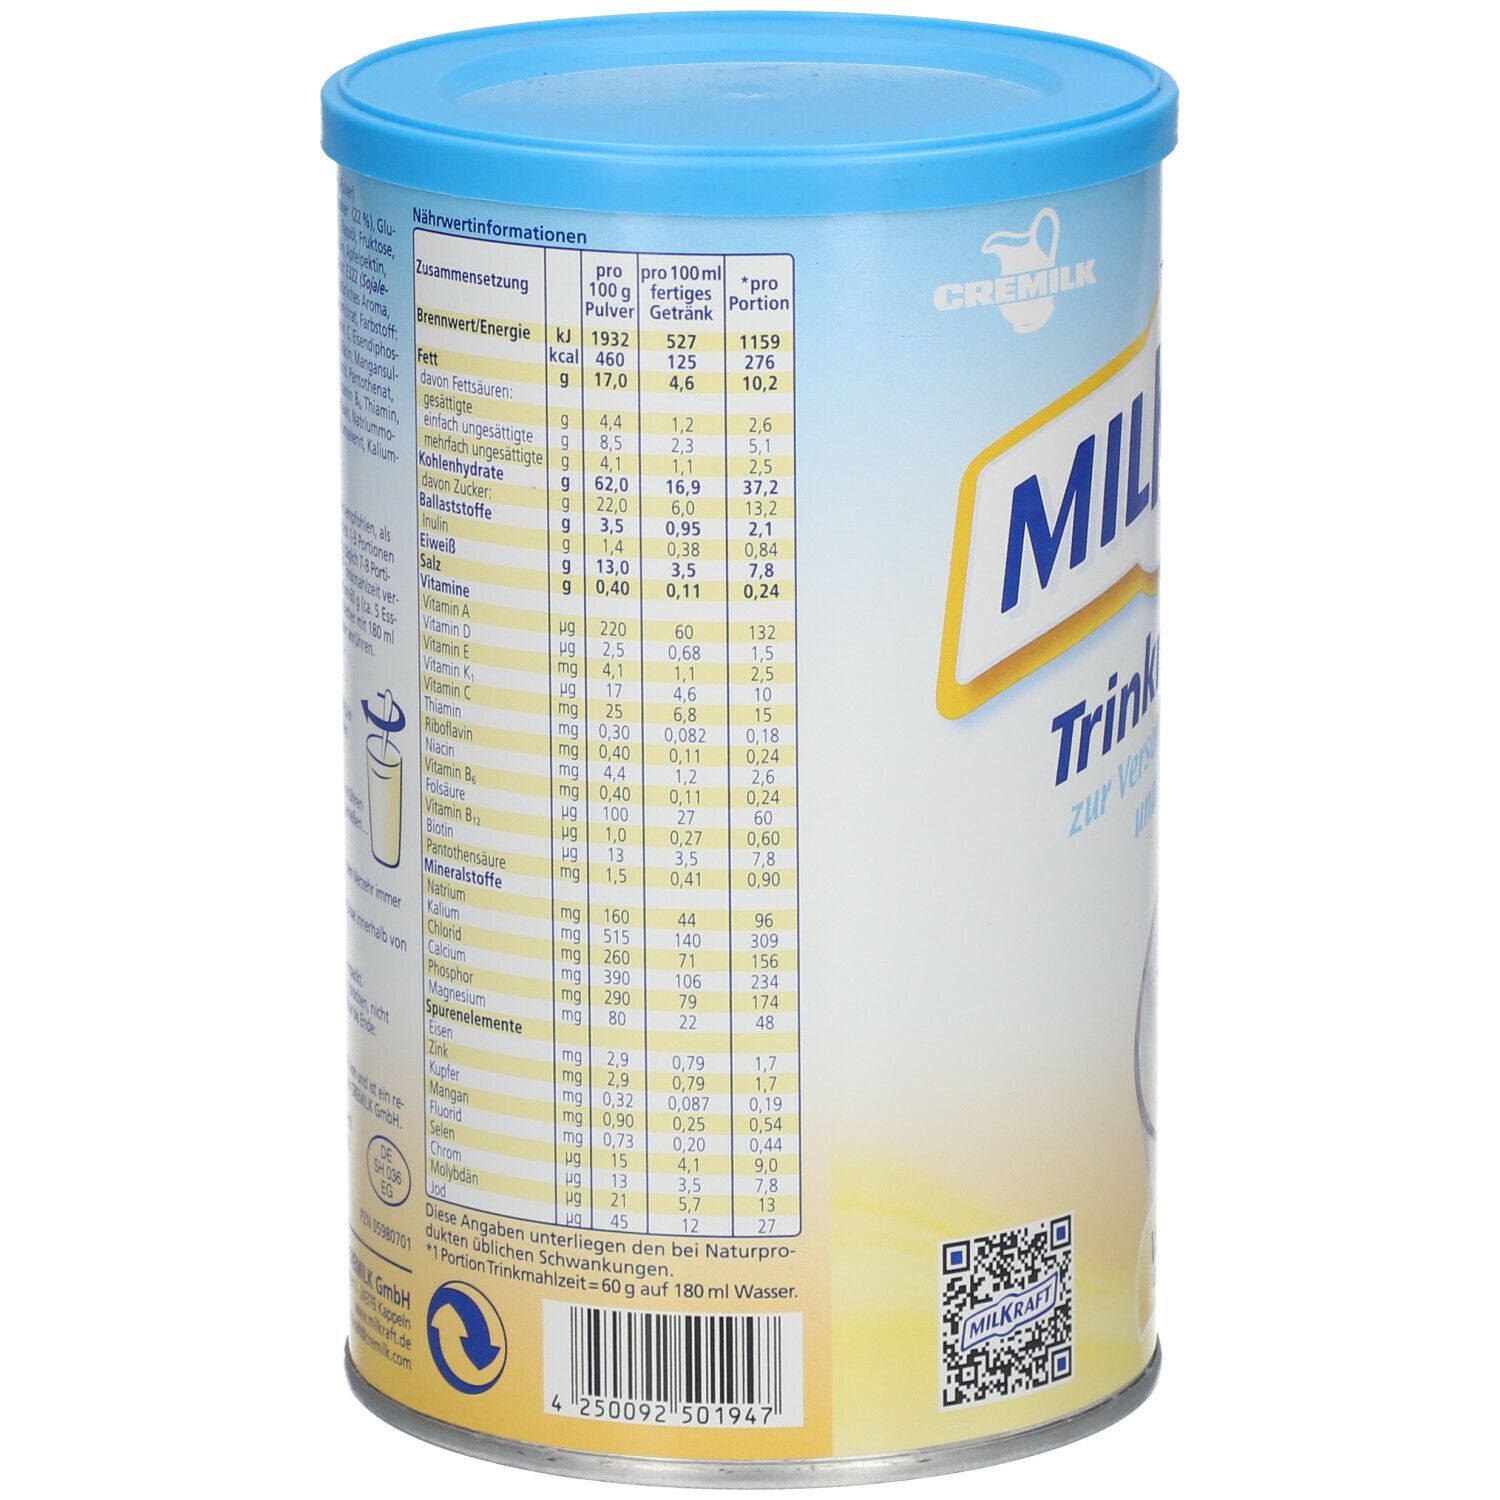 Milkraft Trinkmahlzeit Pulver Vanille